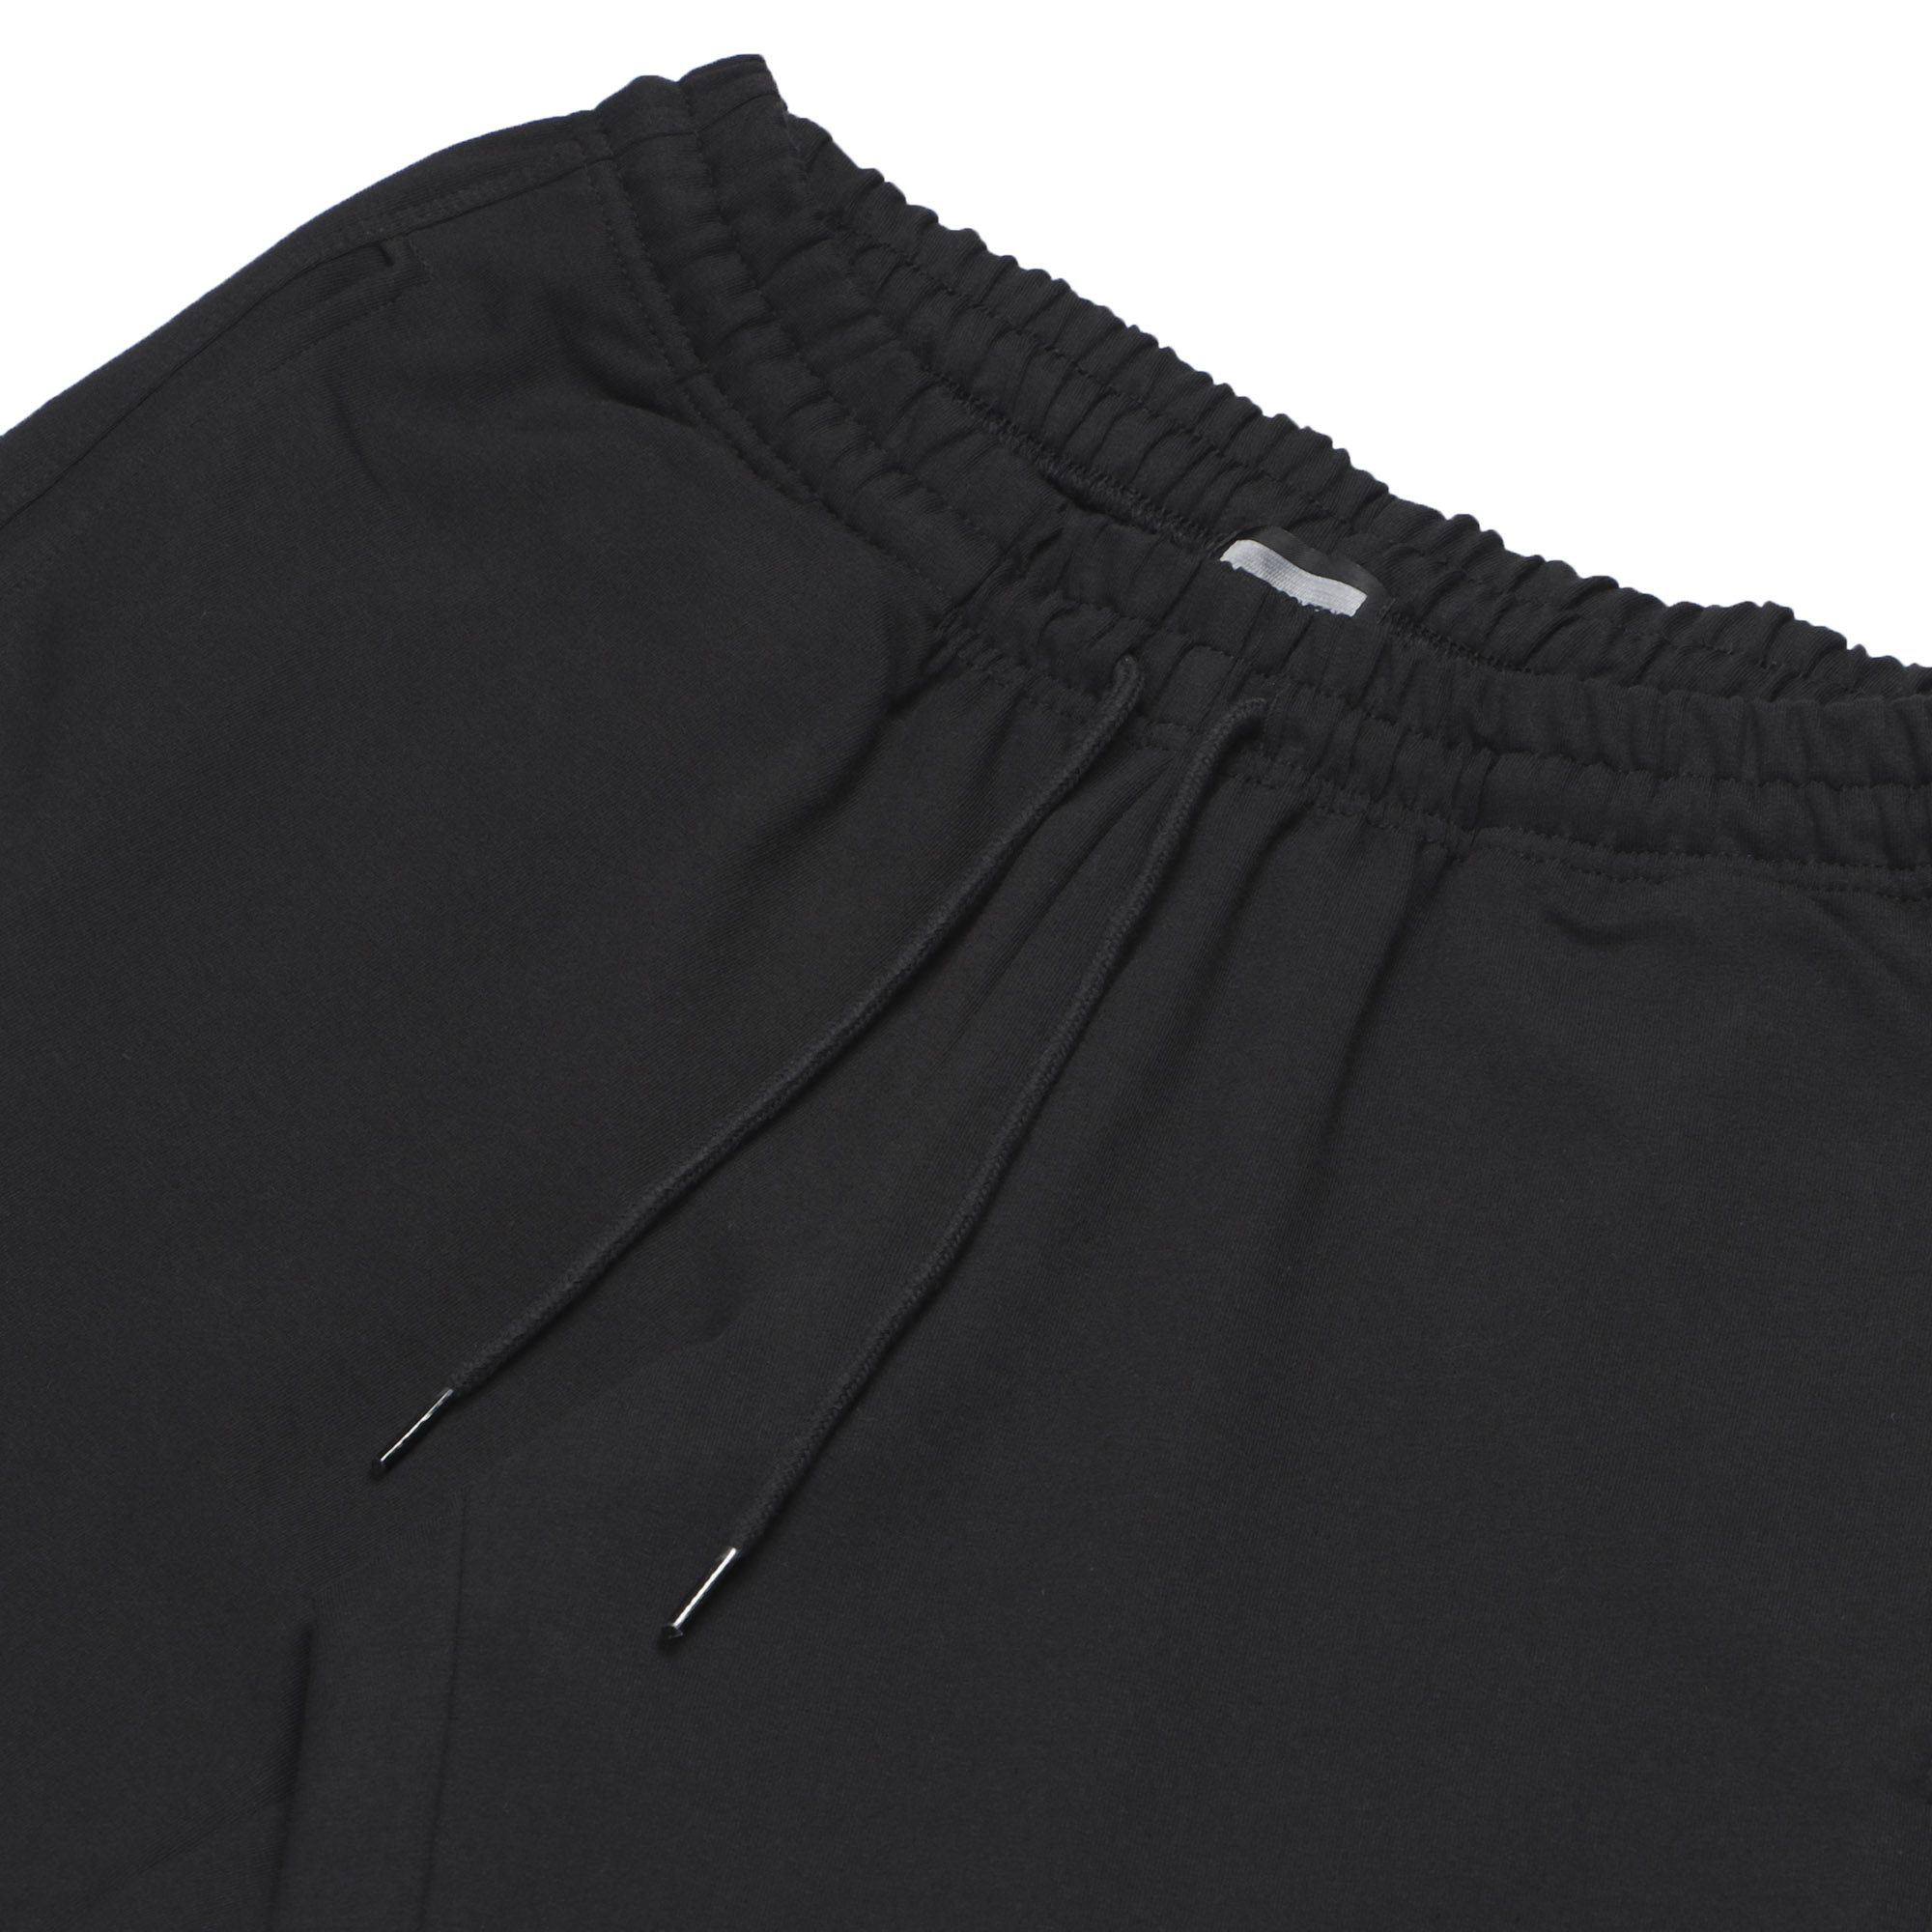 Мужские брюки Pantelemone домашние 56 черные, цвет черный, размер 56 - фото 2